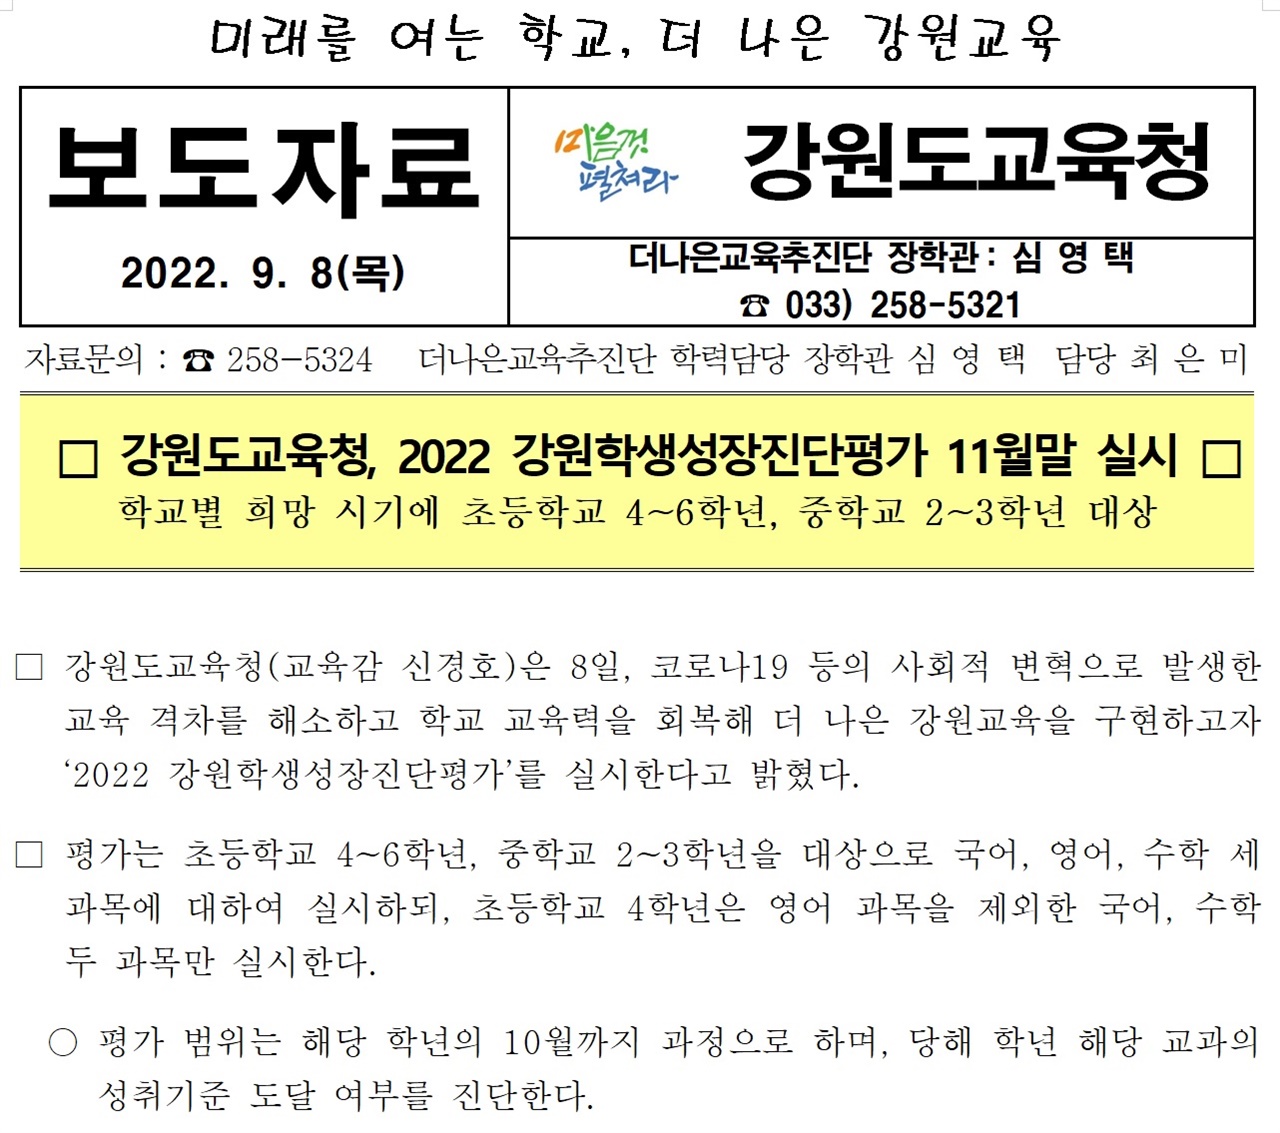 강원도교육청은 지난 9월 8일, ‘2022 강원학생성장진단평가’라는 이름으로 일제식 학력 평가를 11월 말에 실시하겠다고 밝혔다.